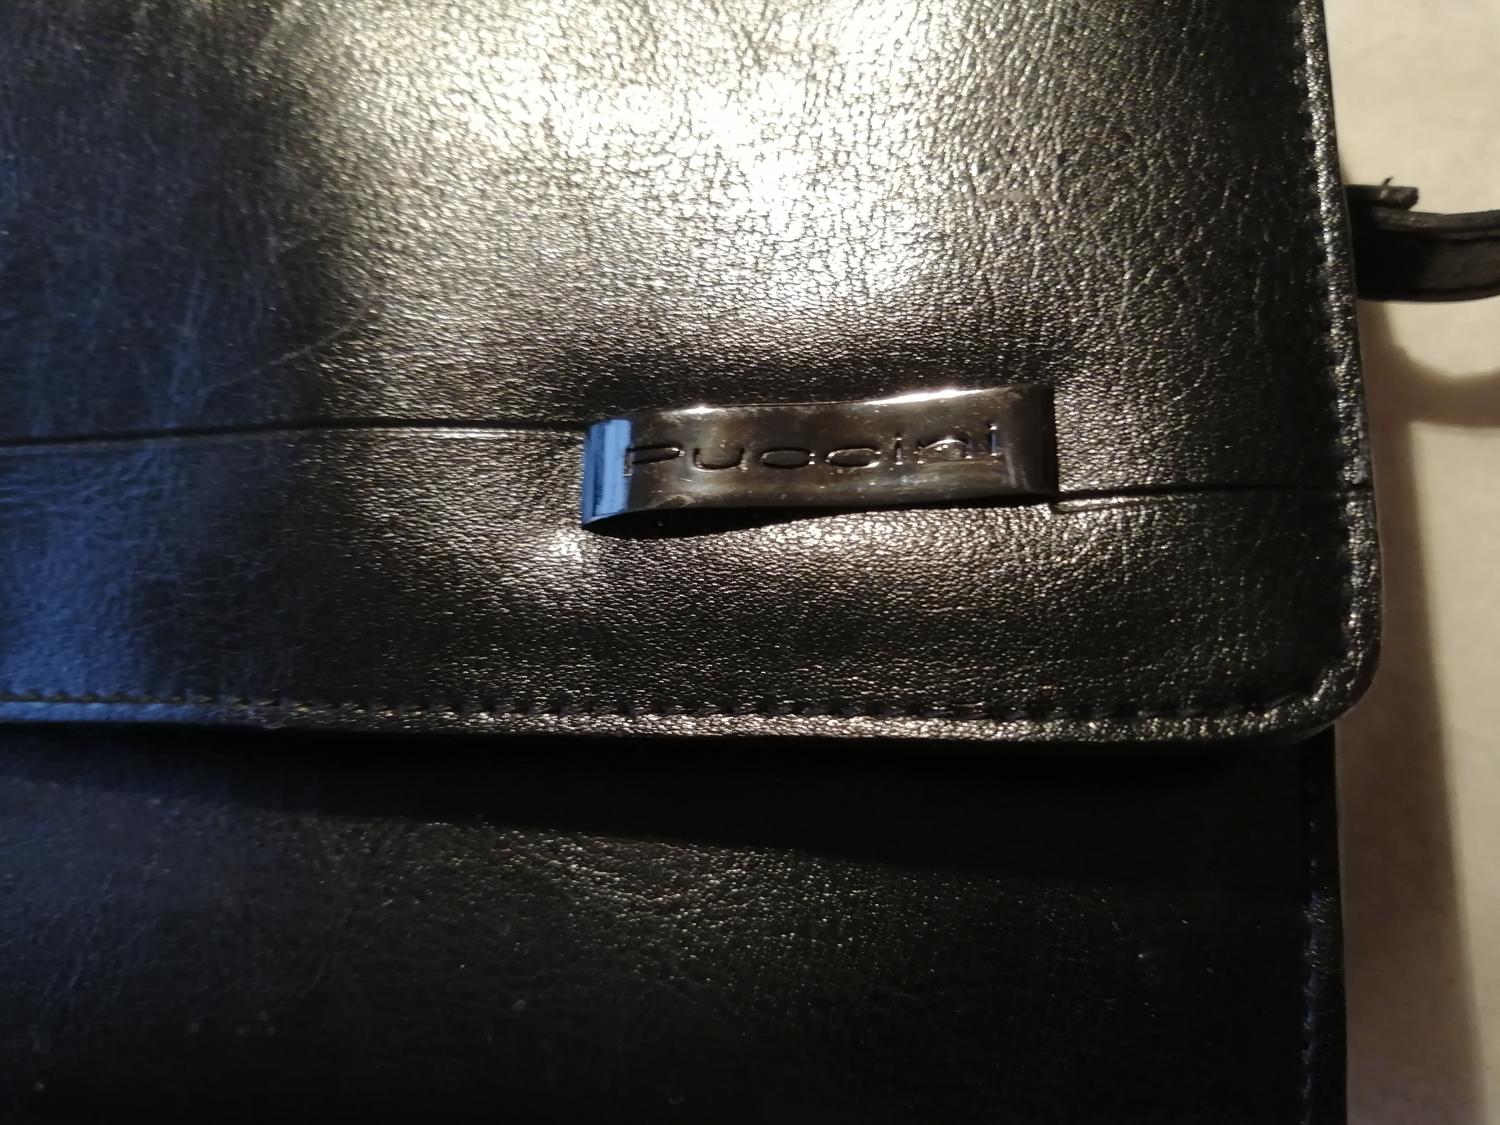 Second hand svart liten väska axelrem inbyggd plånbok många fickor